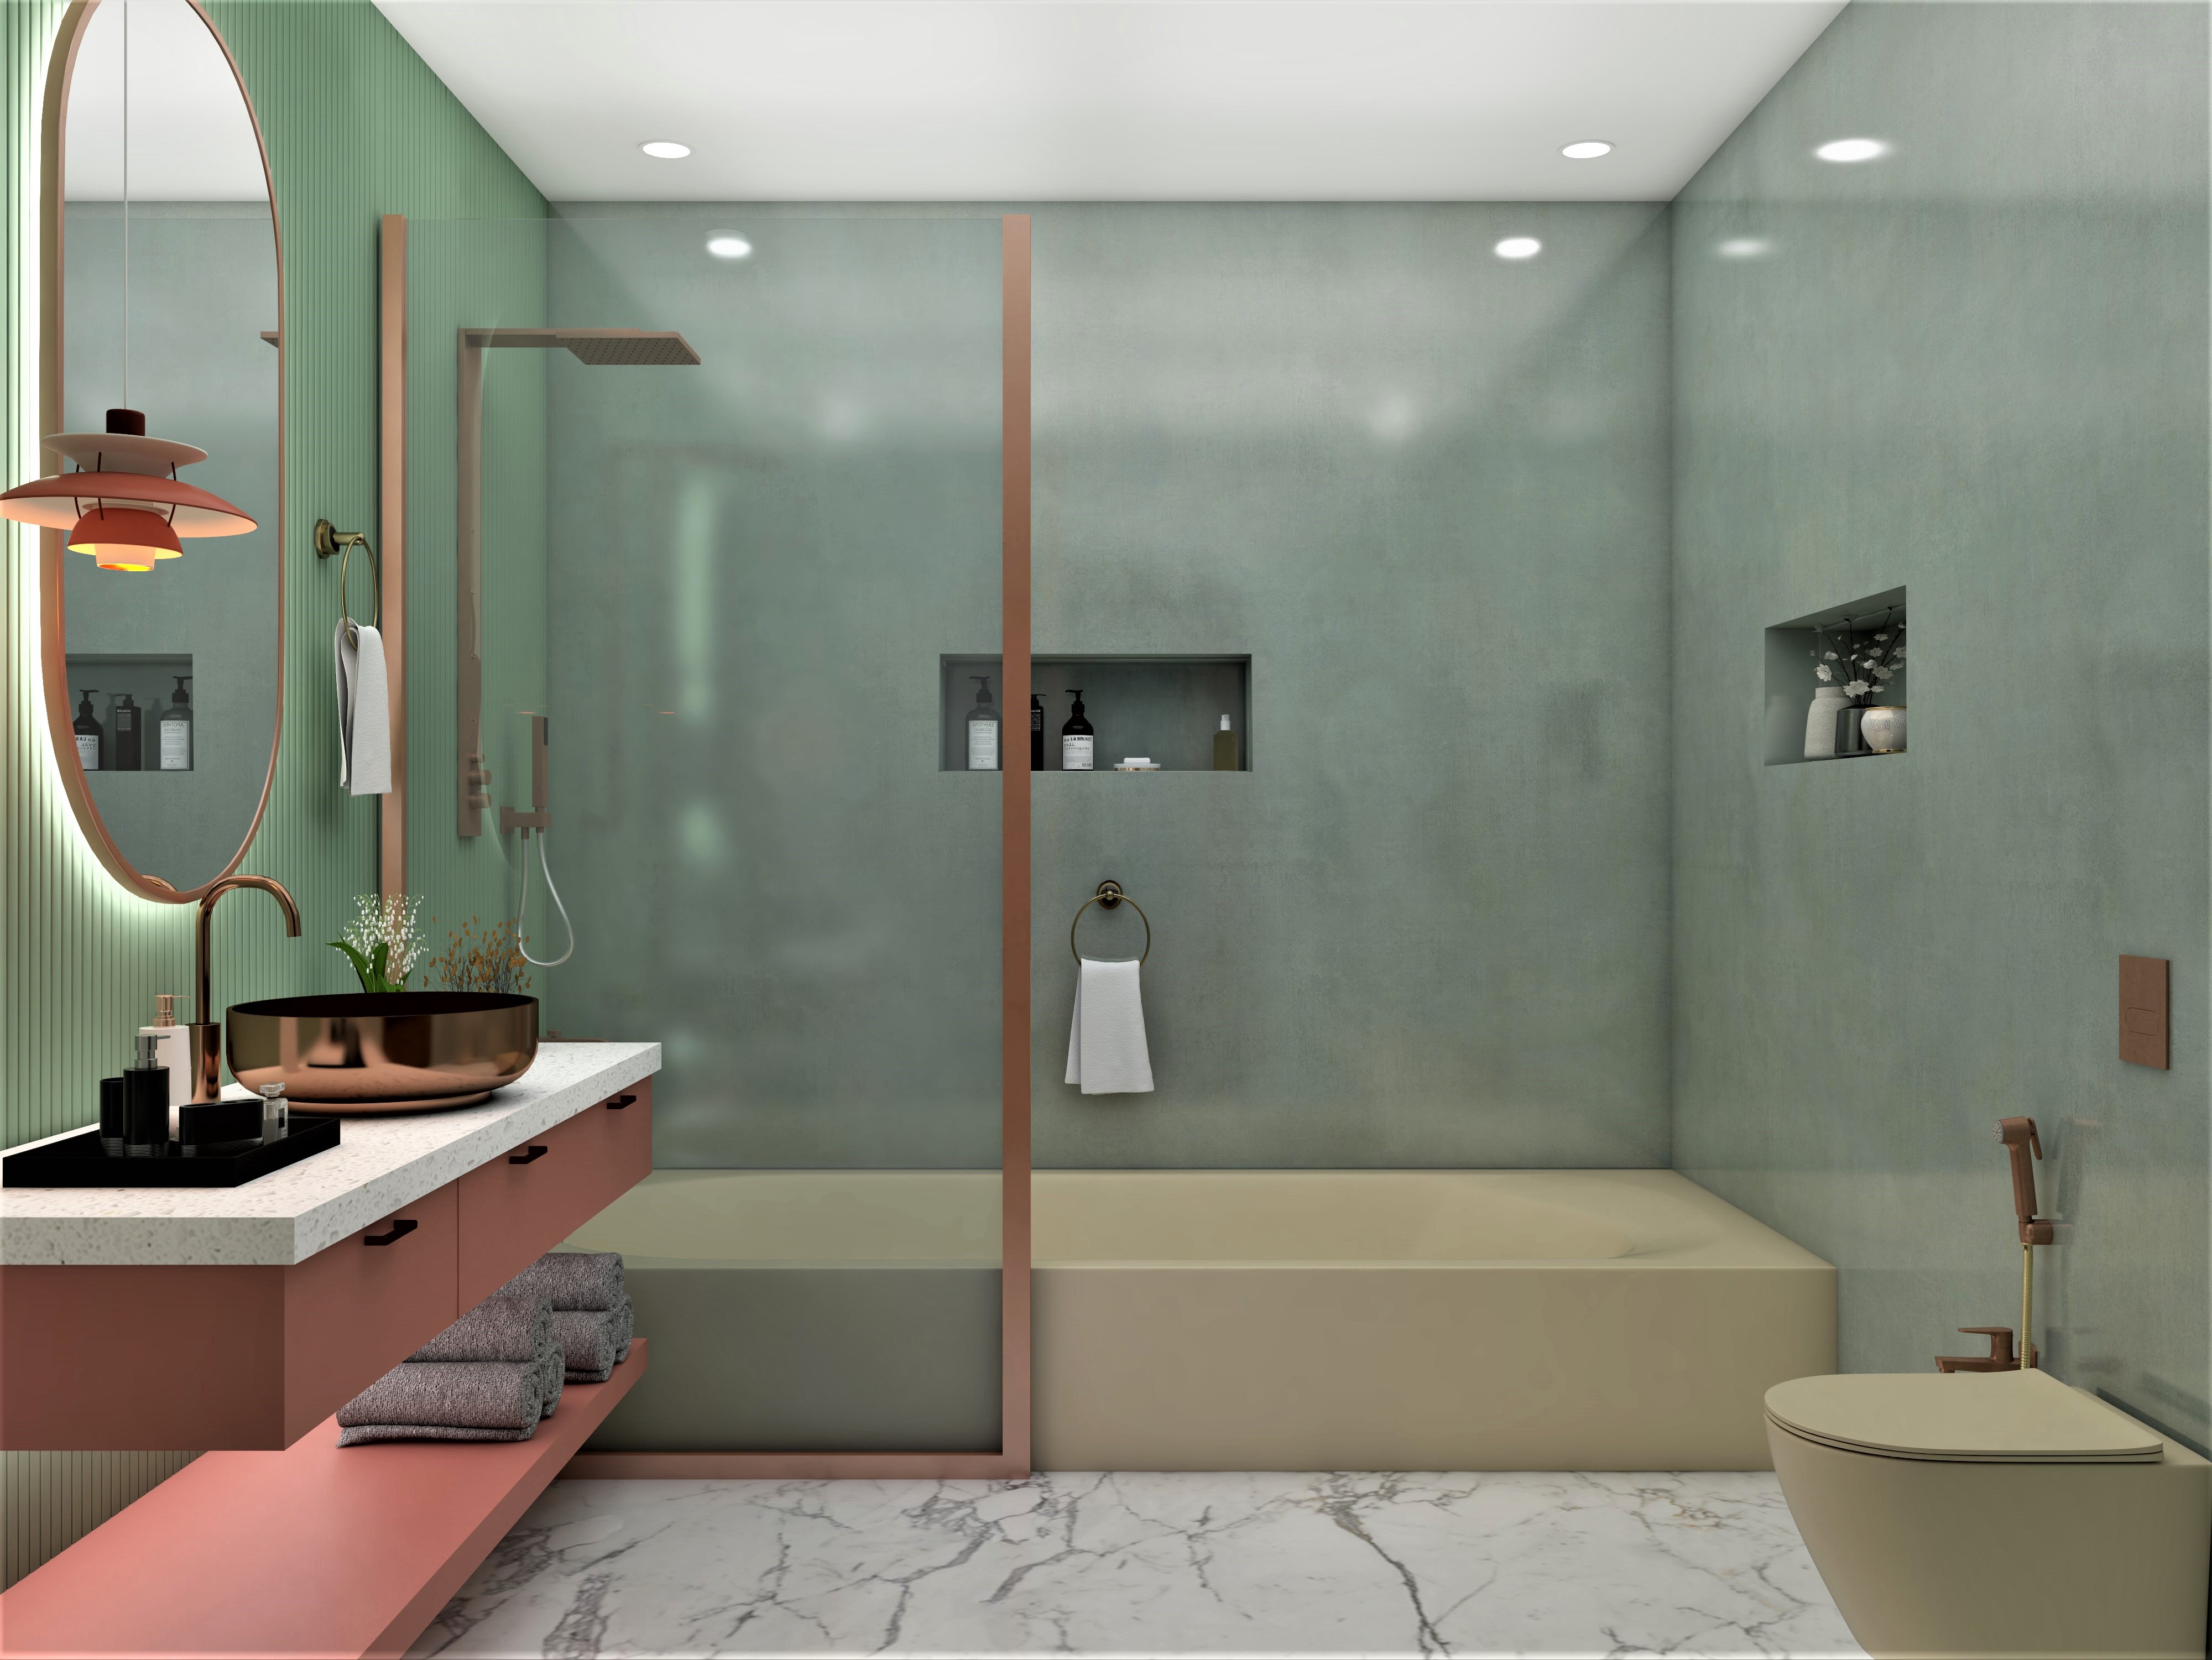 Luxury bathroom ideas- Beautiful Homes